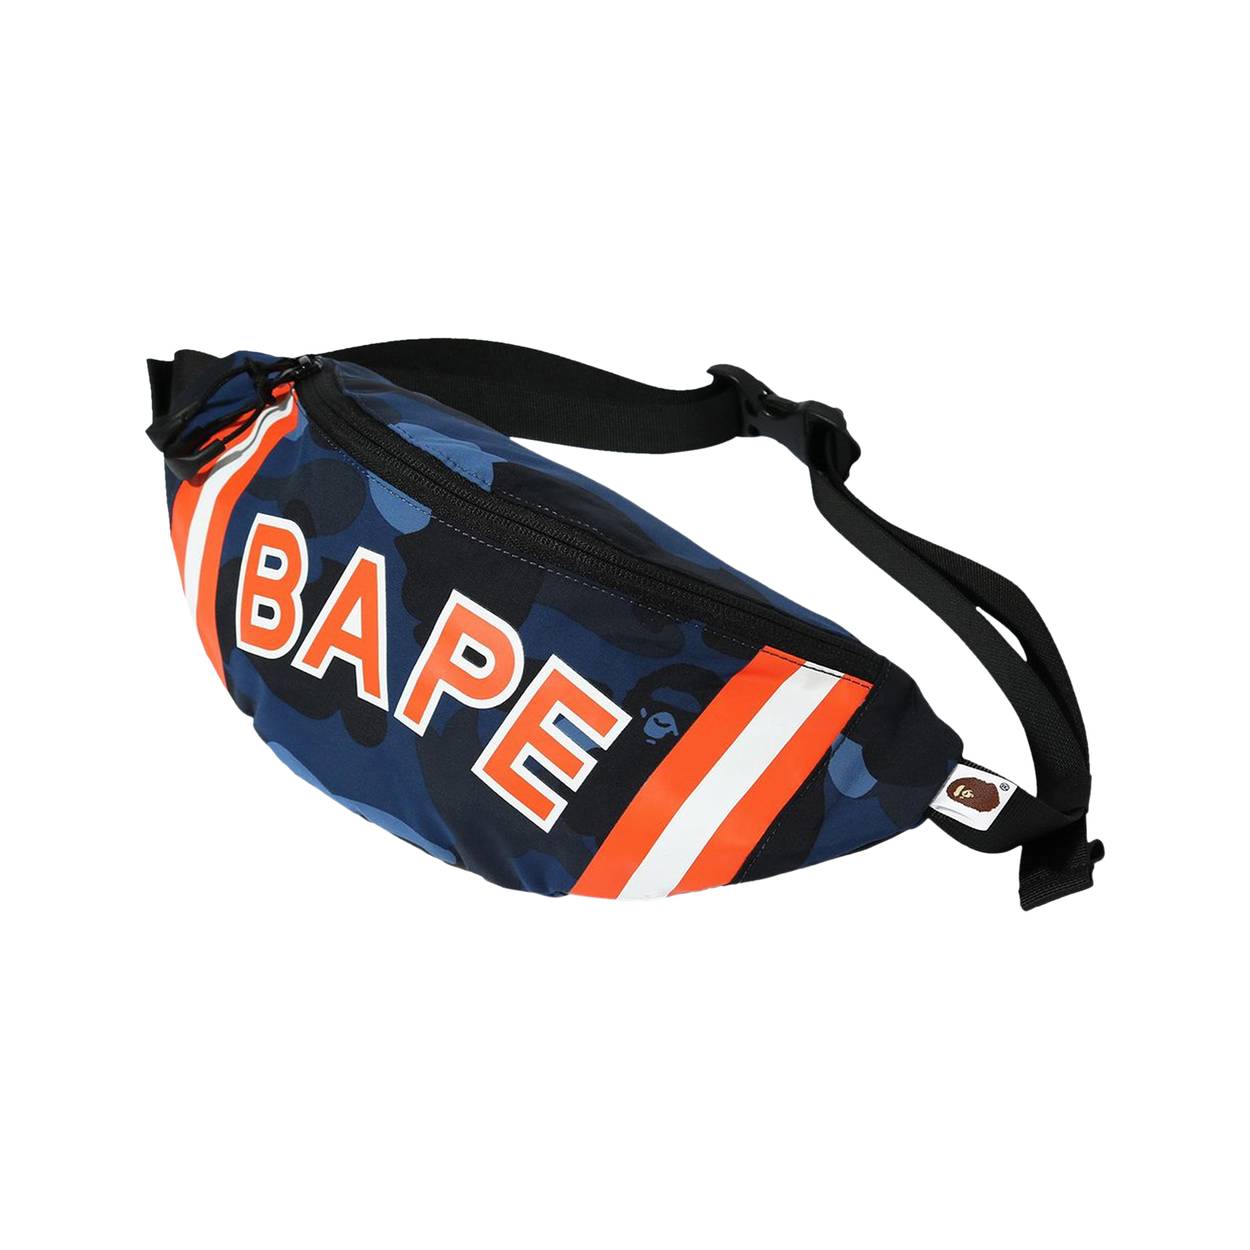 BAPE Color Camo Waist Bag 'Navy' - BAPE - 1G30 182 008 NAVY | GOAT